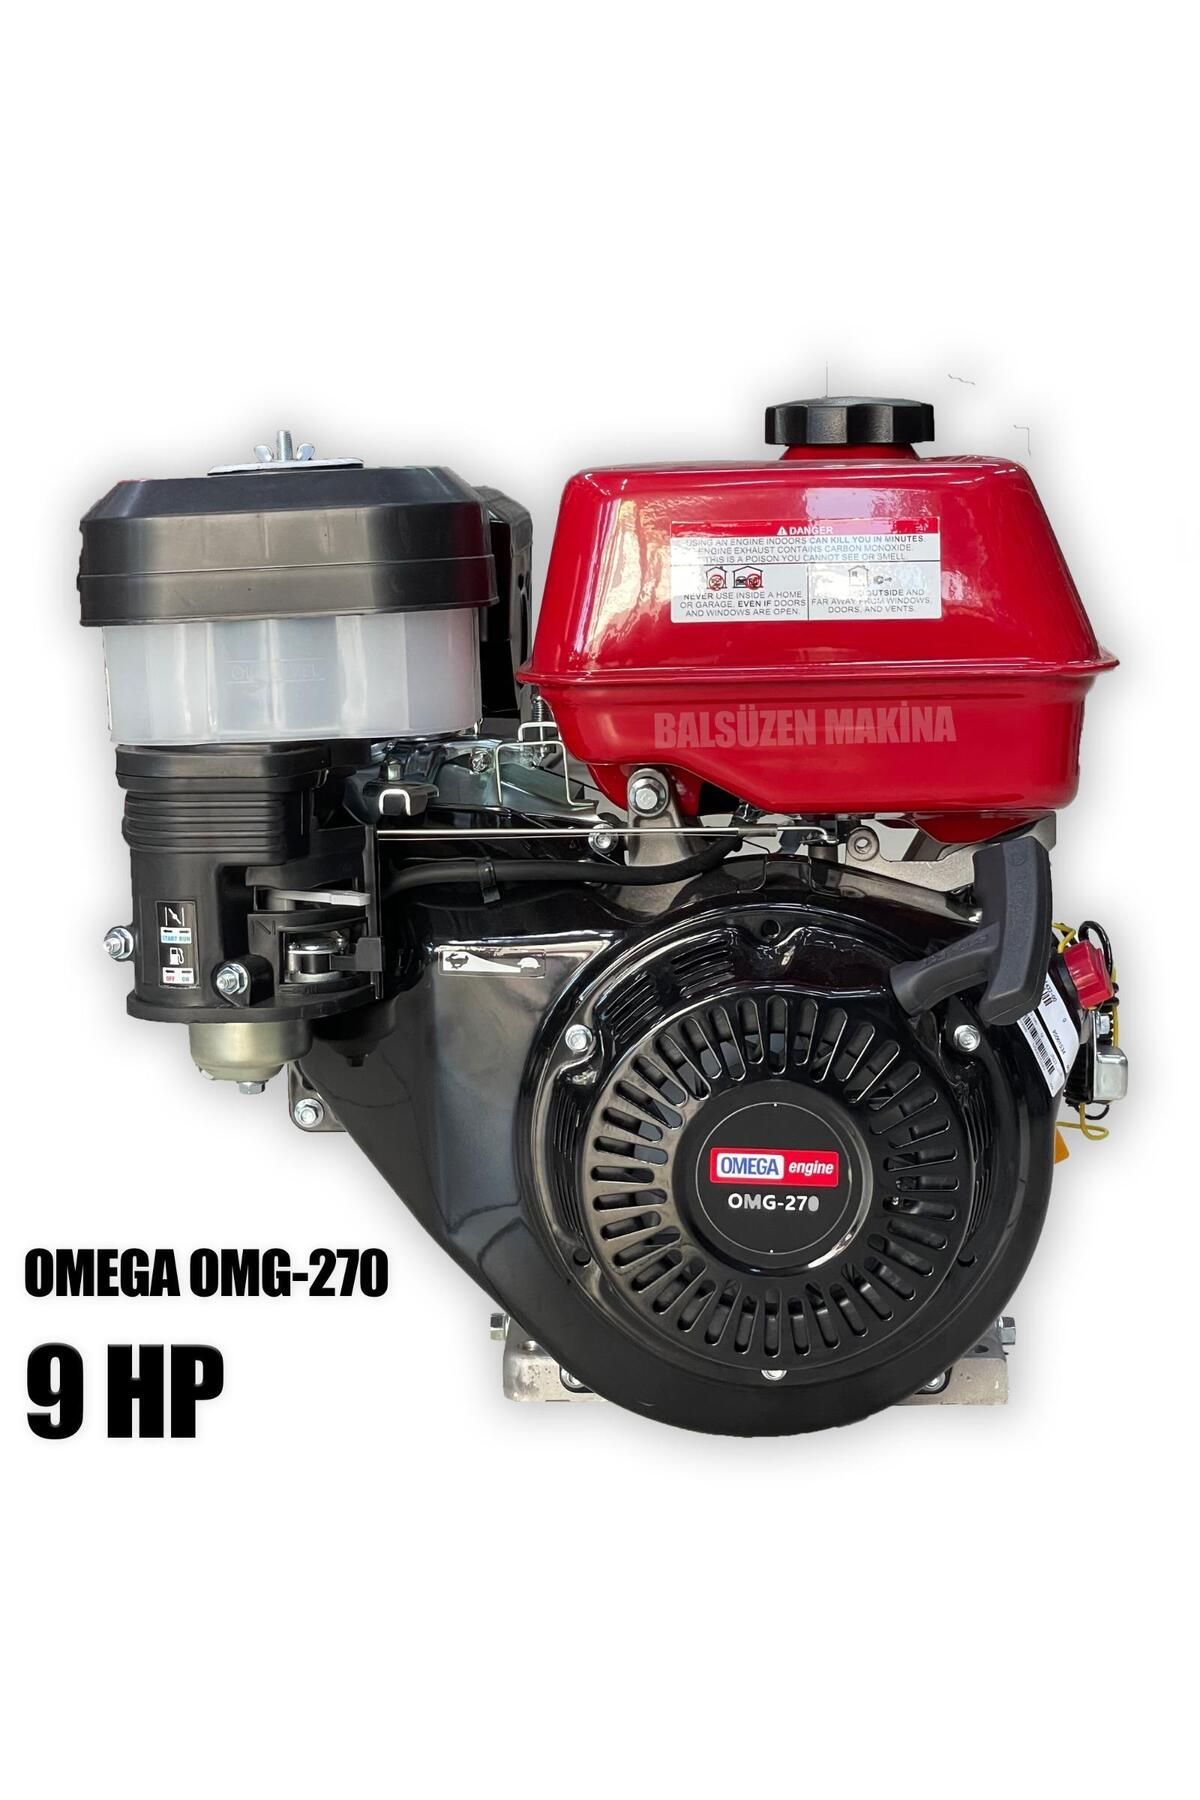 Omega Omg-270 9 Hp Benzinli Motor